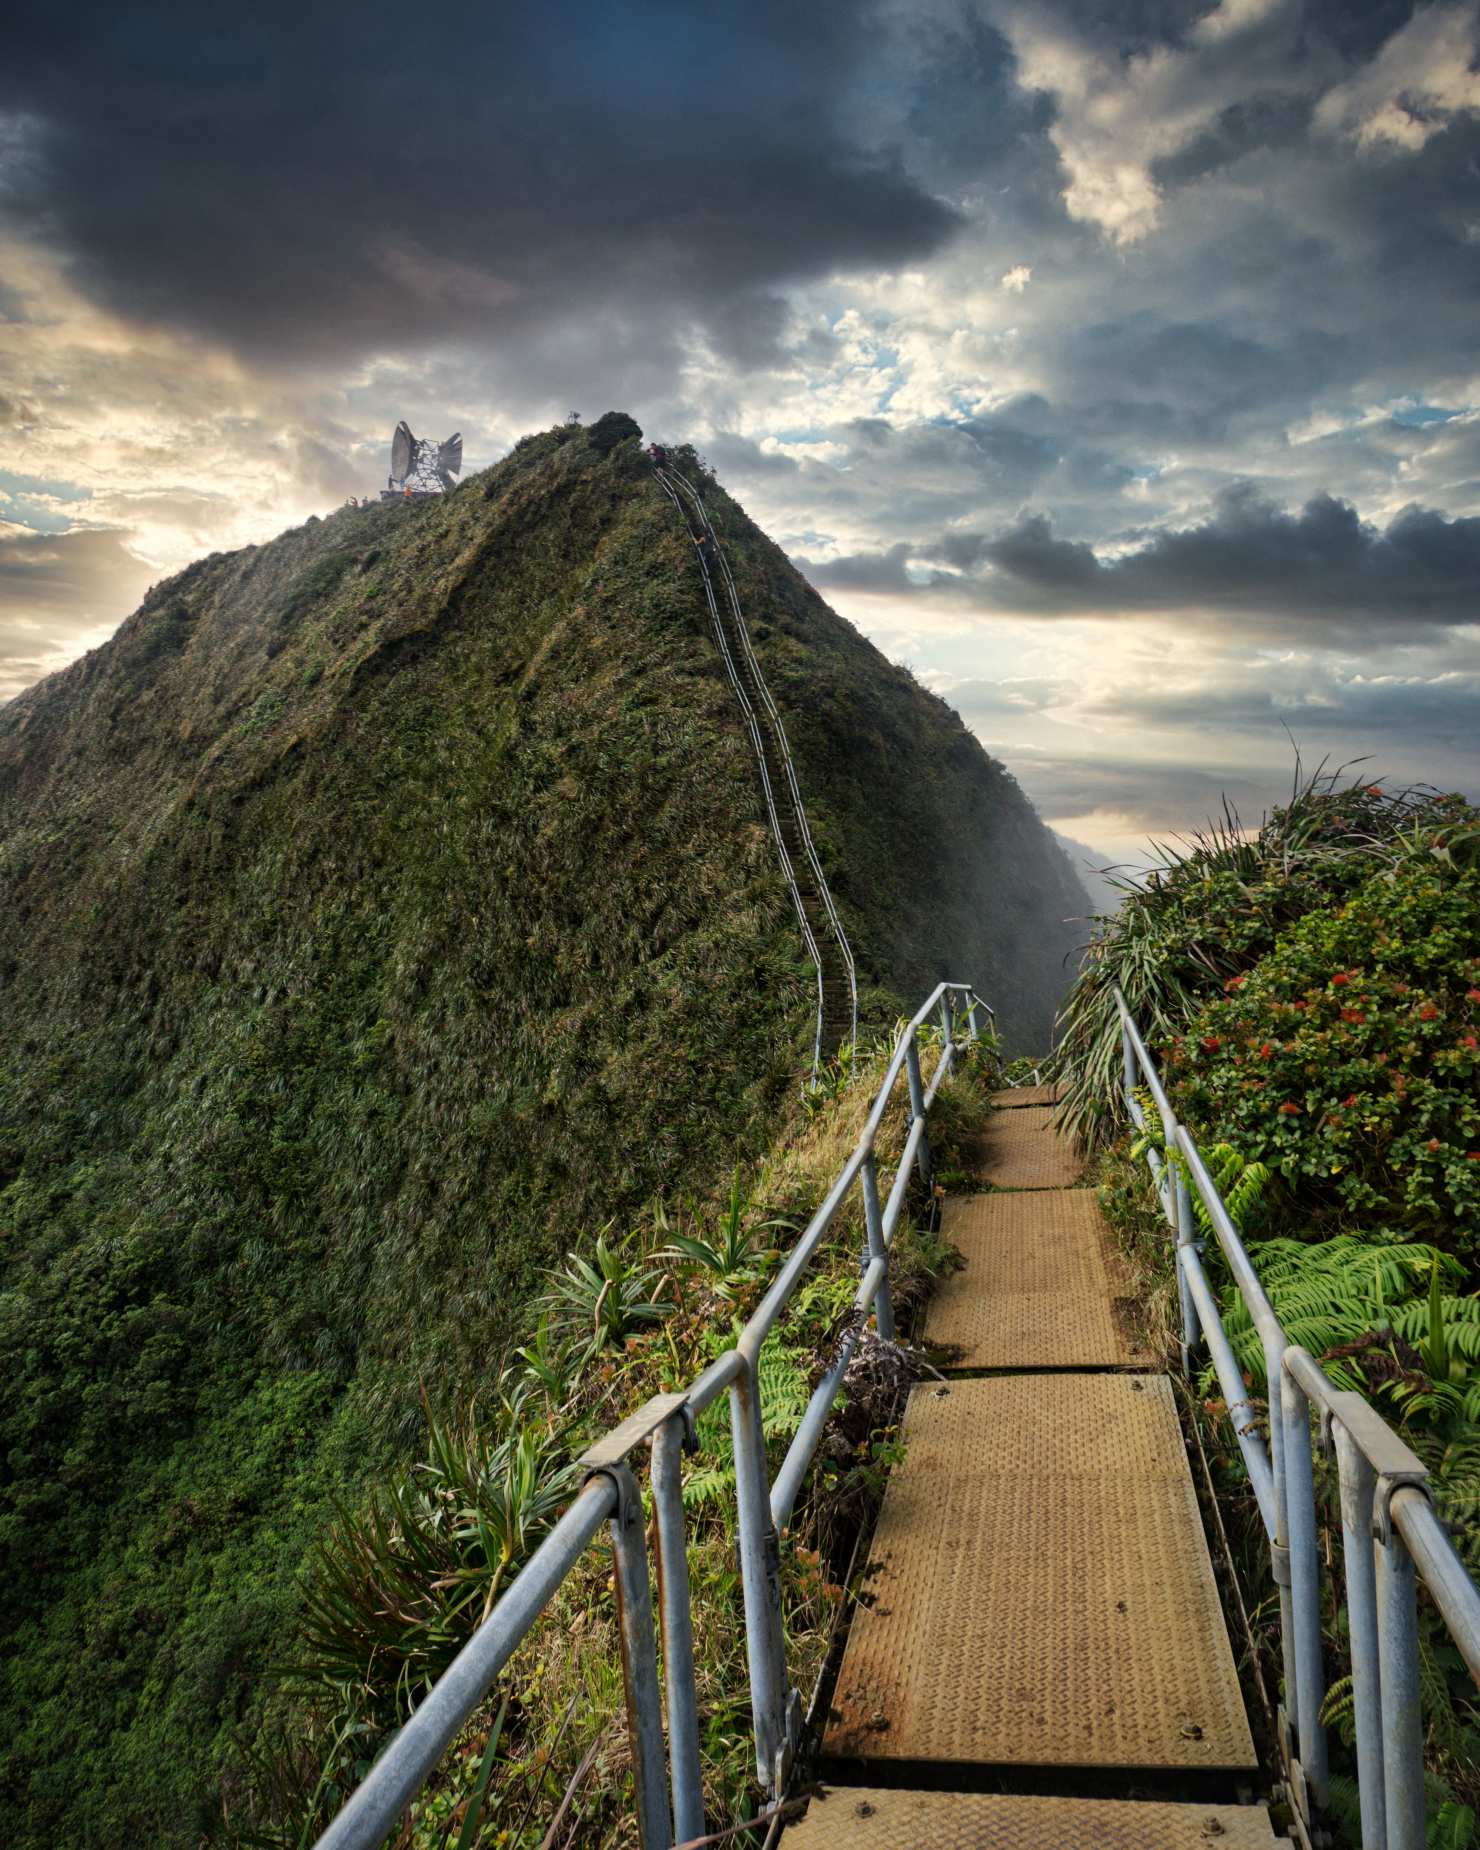 L'escalier Haiku, également appelé "l'escalier vers le paradis", est une structure en acier perfide et séduisante comprenant 3,922 1942 marches. Construit à l'origine en XNUMX, l'escalier permettait d'accéder à la station de radio top secrète Haʻikū, une installation de communication de la marine américaine pendant la Seconde Guerre mondiale. Ces escaliers enjambent la majestueuse chaîne de montagnes Ko'olau, offrant une vue panoramique à couper le souffle sur Kaneohe et la baie de Kaneohe.